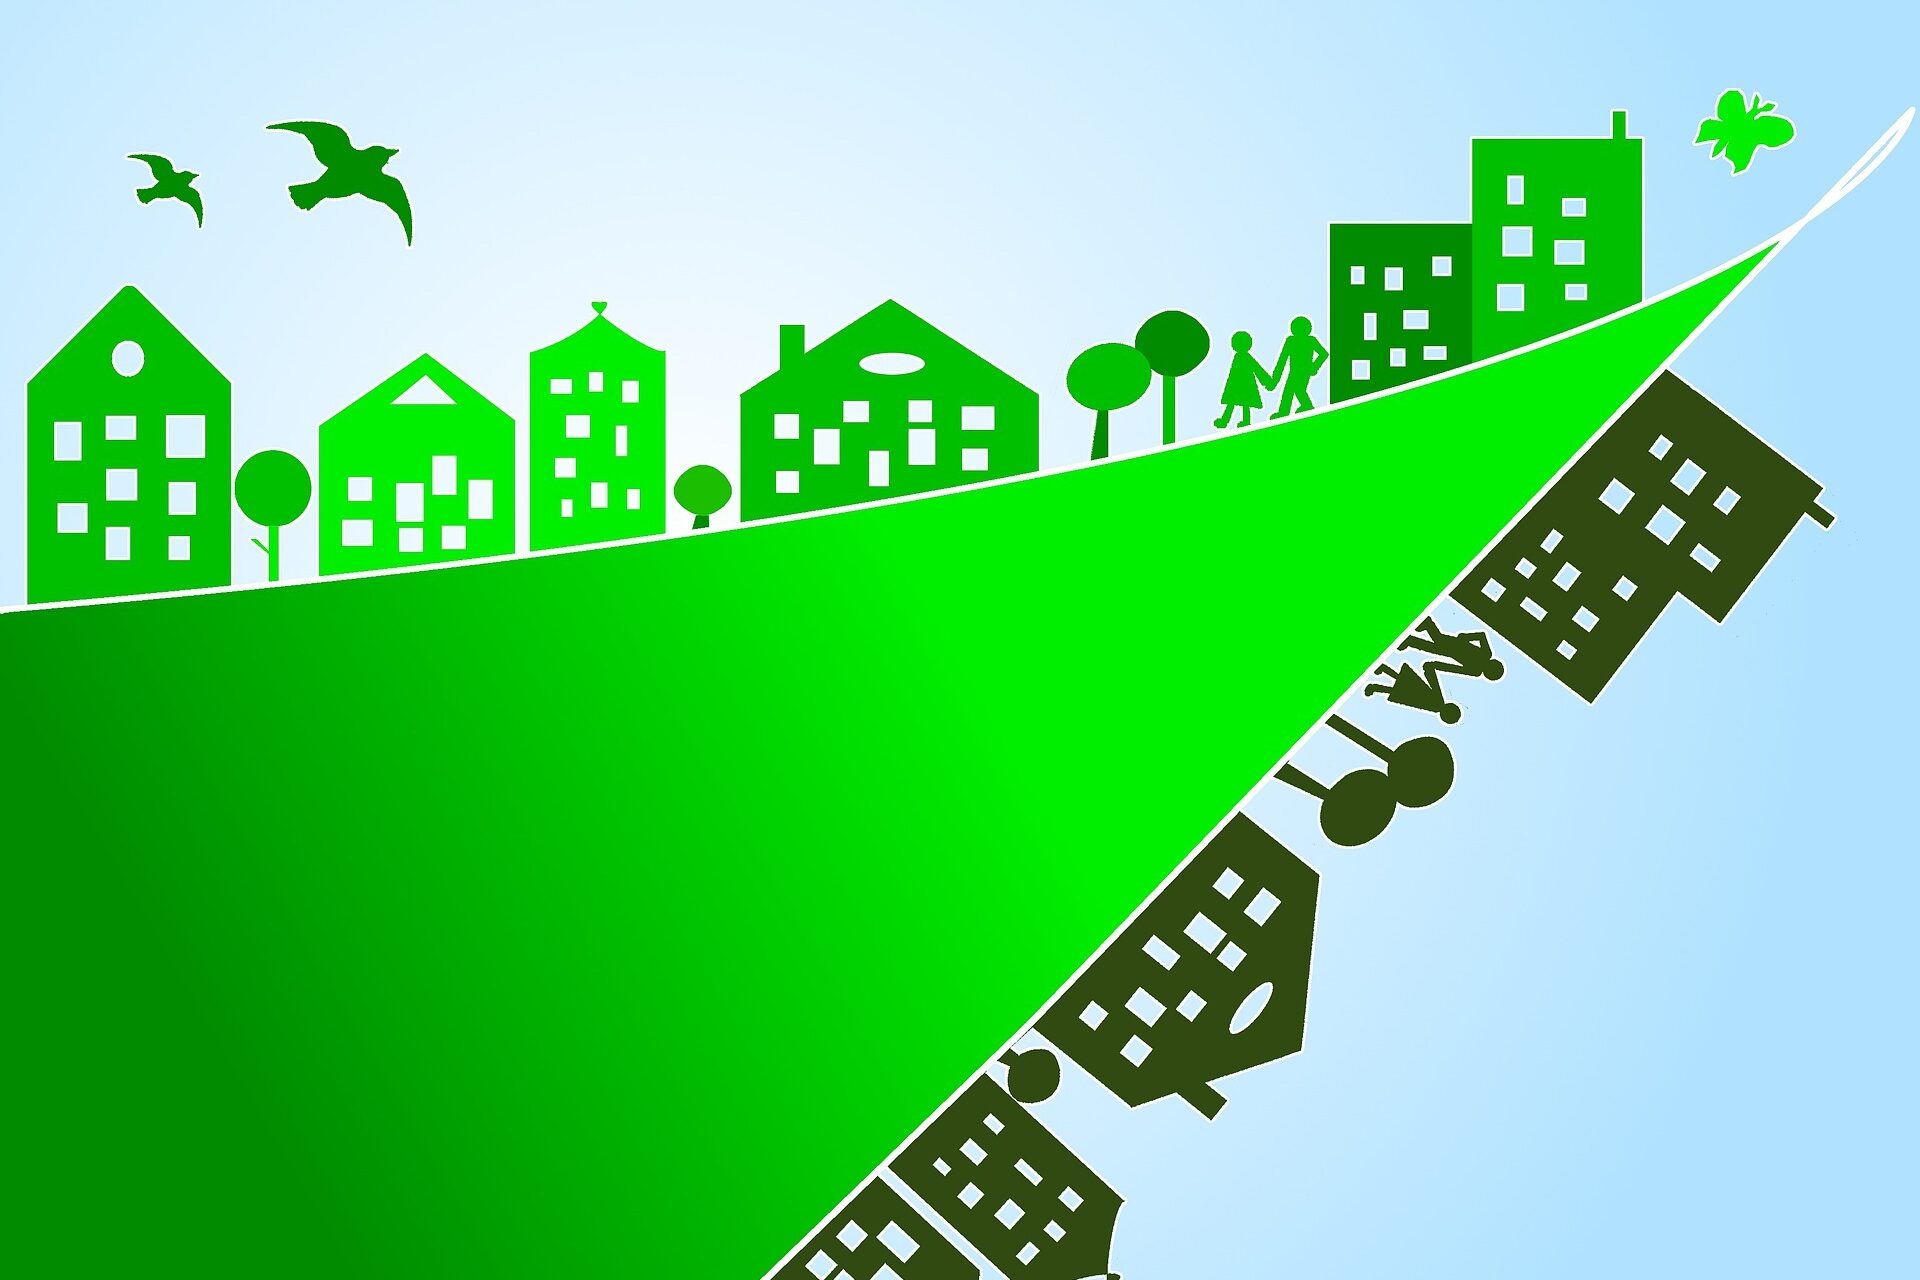 Grafik mit Häusern und Vögel in grün gehalten zur Veranschaulichung von Klimaschutz